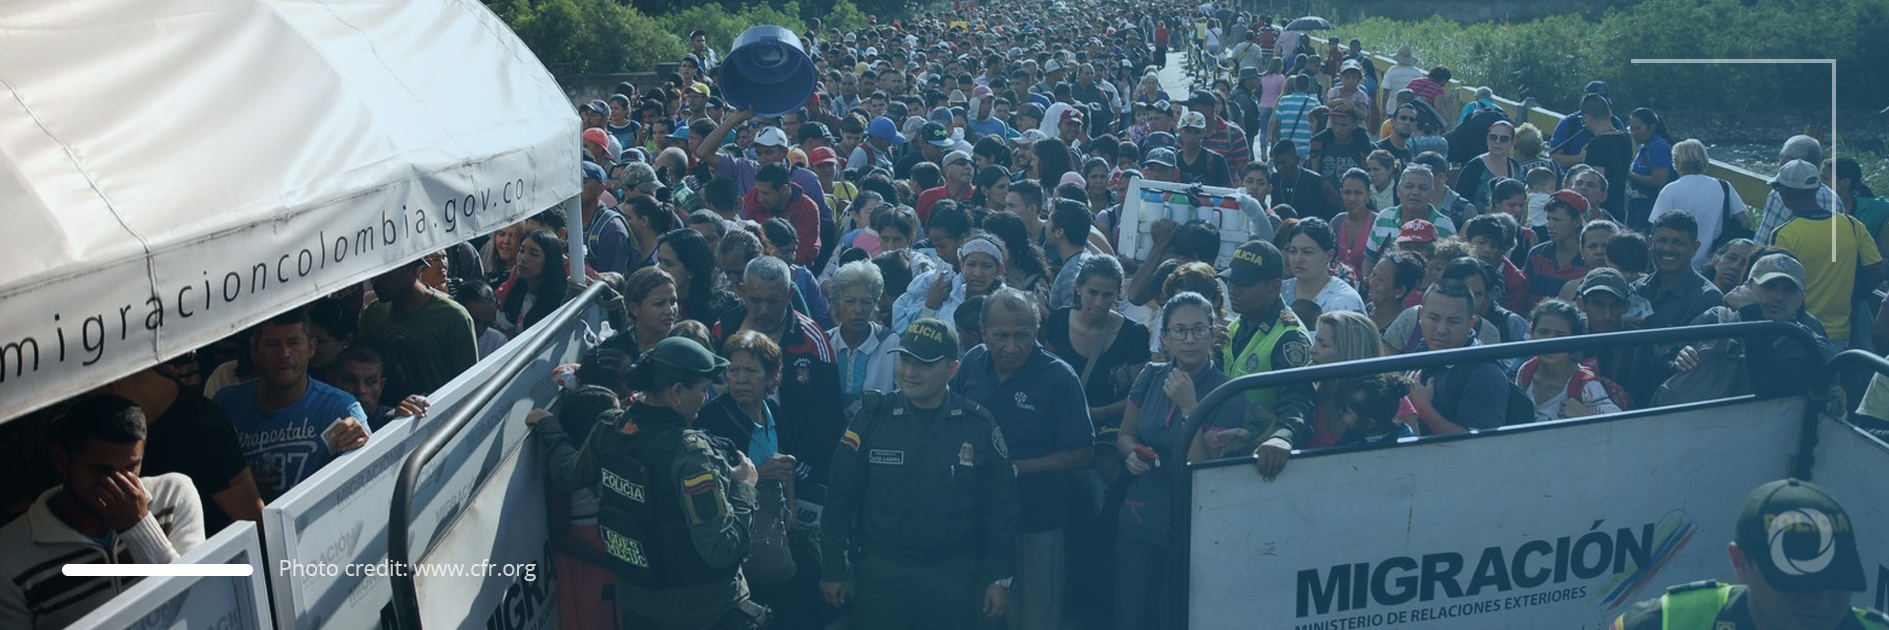 Venezuelan migration crisis – overview